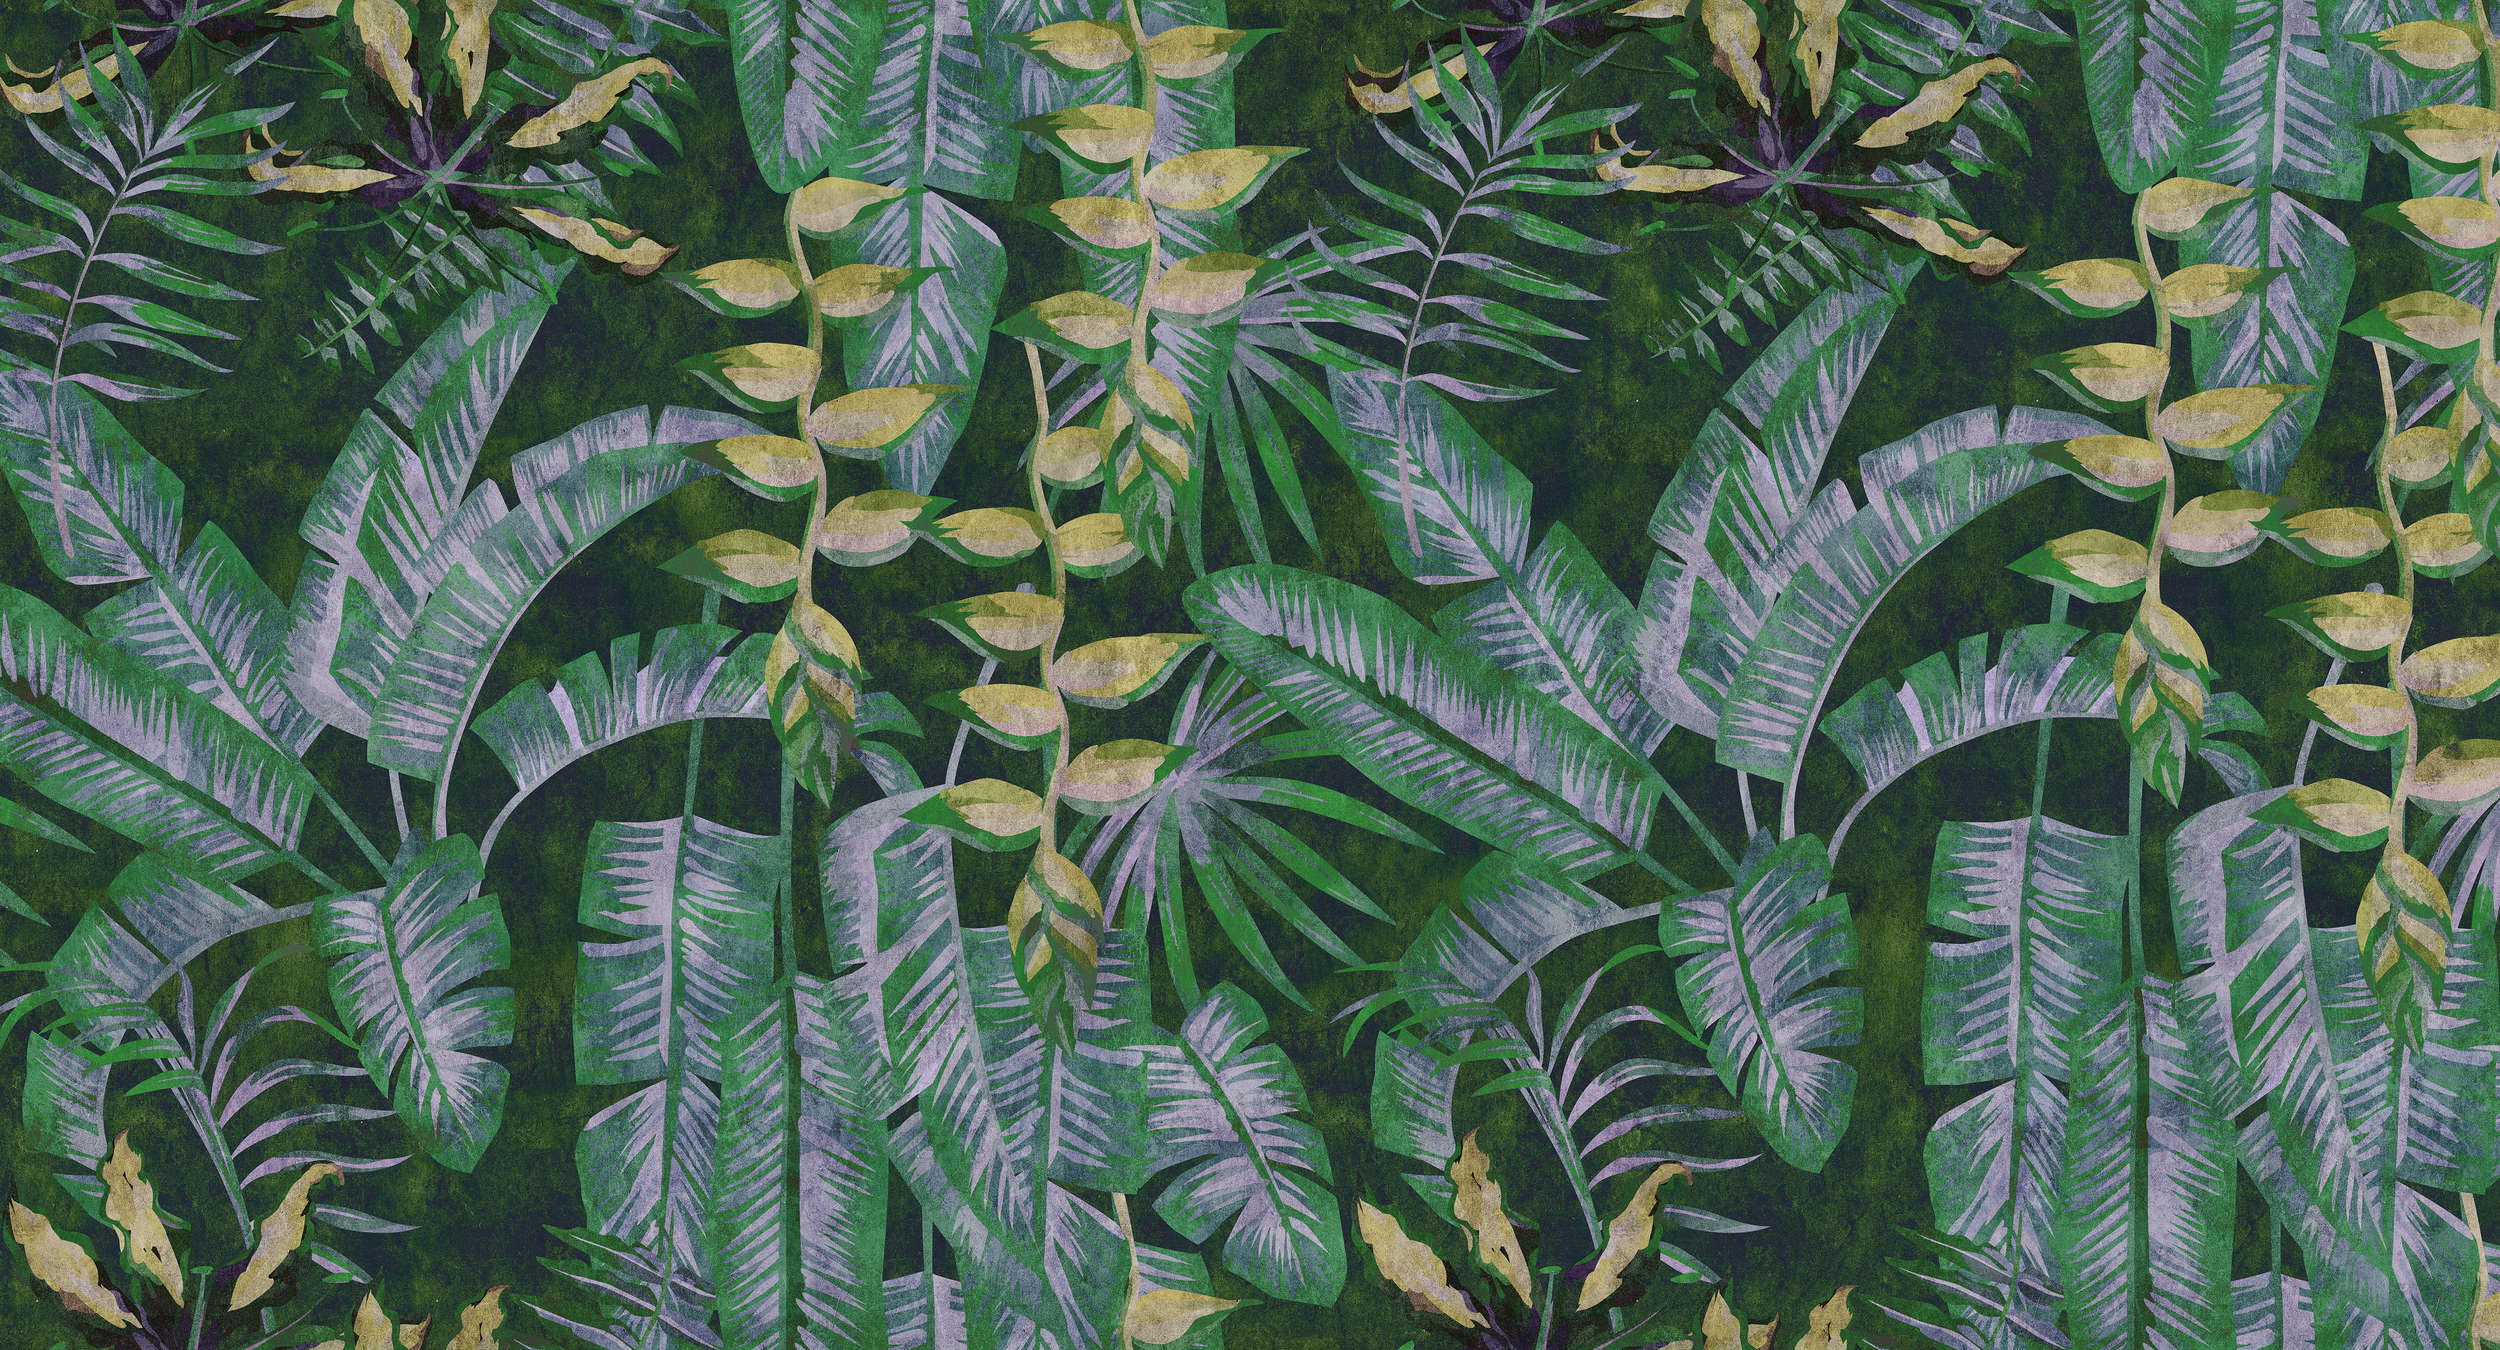             Tropicana 2 - Papier peint imprimé numériquement avec des plantes tropicales dans une structure de papier buvard - jaune, vert | intissé lisse nacré
        